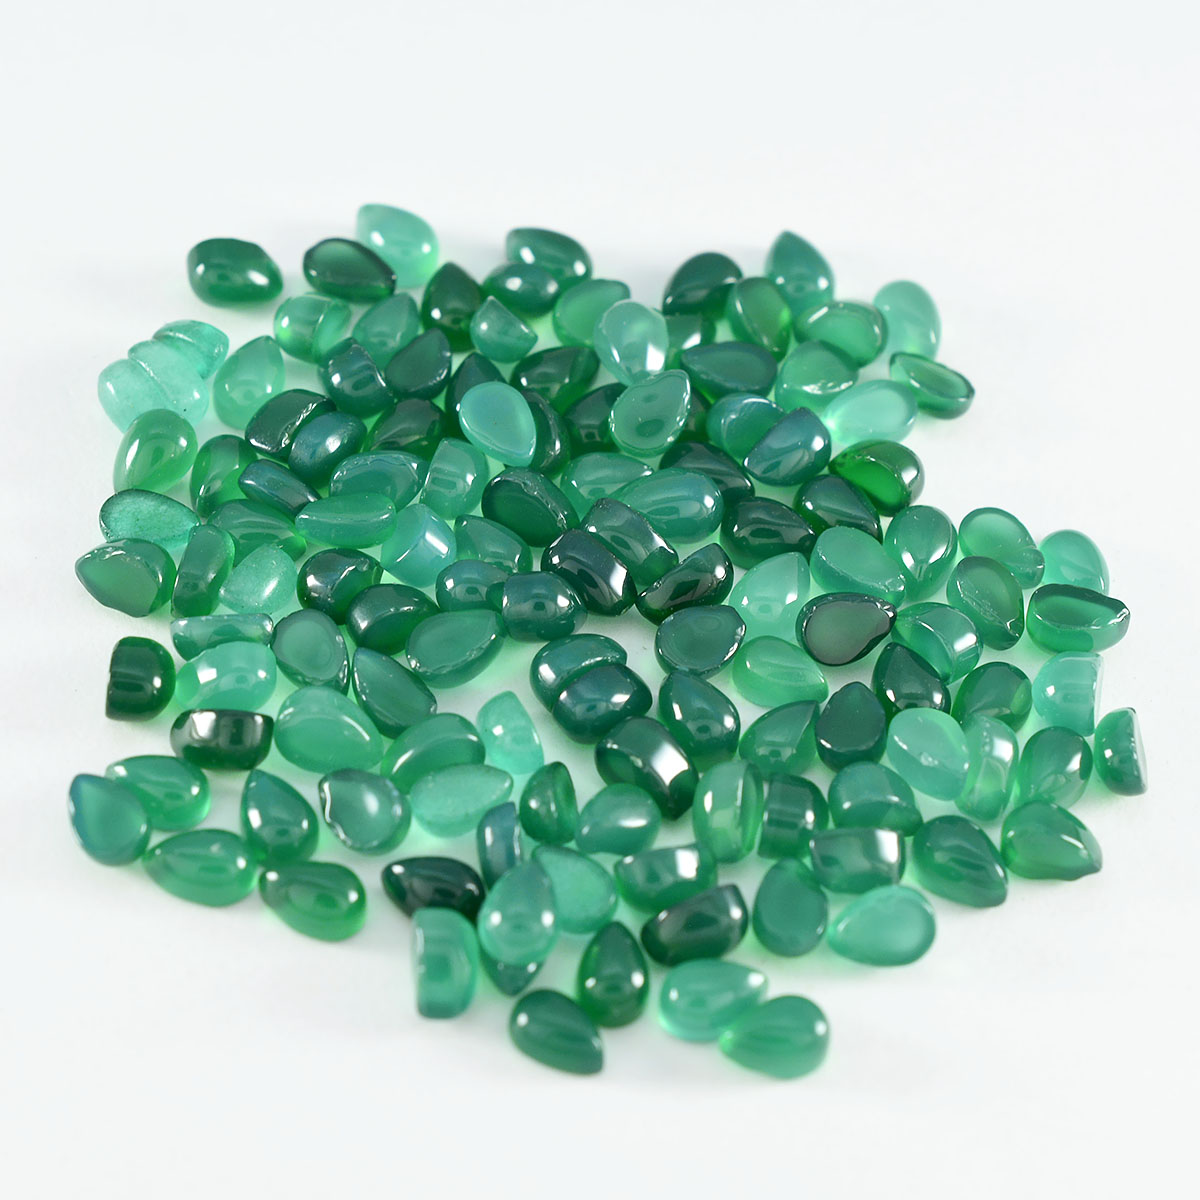 riyogems 1шт зеленый оникс кабошон 4х6 мм грушевидной формы драгоценный камень отличного качества